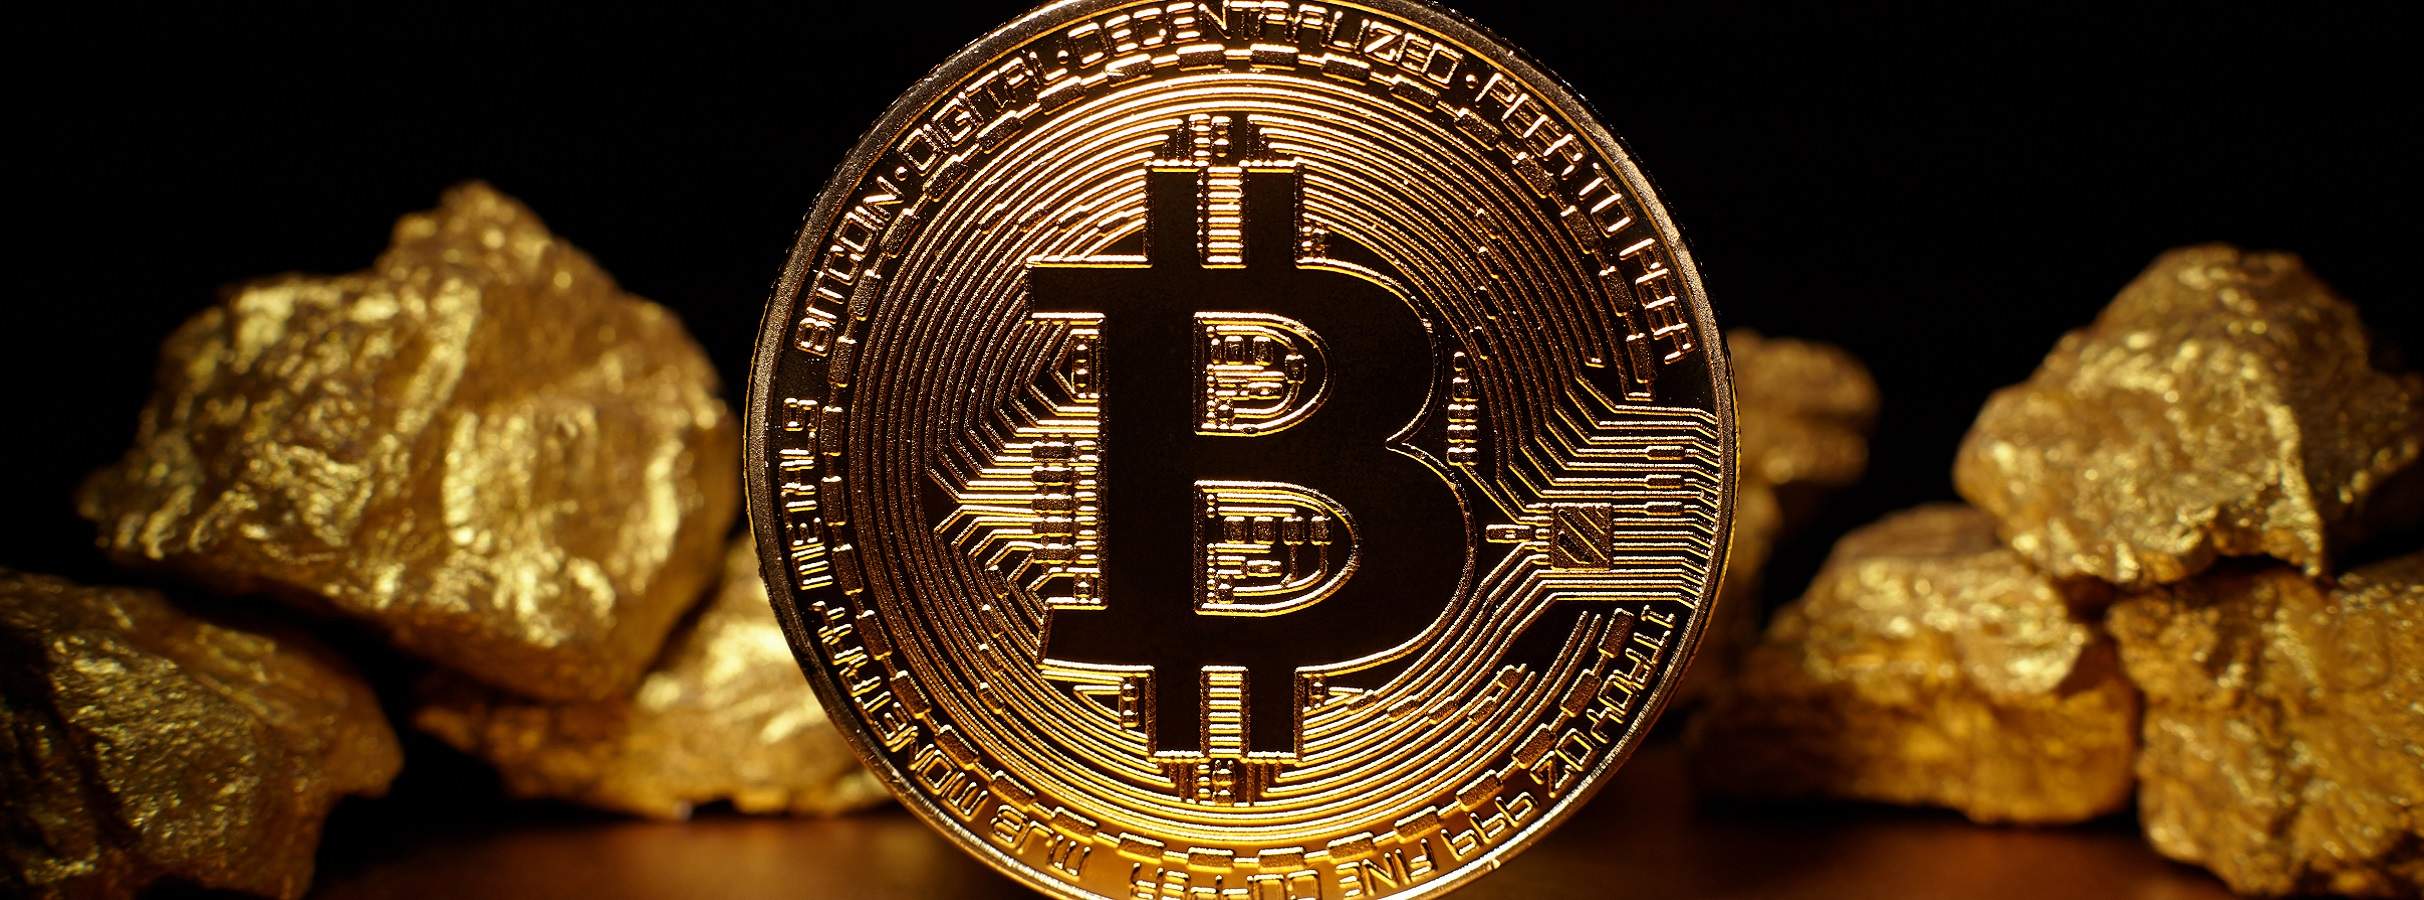 14% dos americanos possuem Bitcoin enquanto apenas 12% possuem ouro